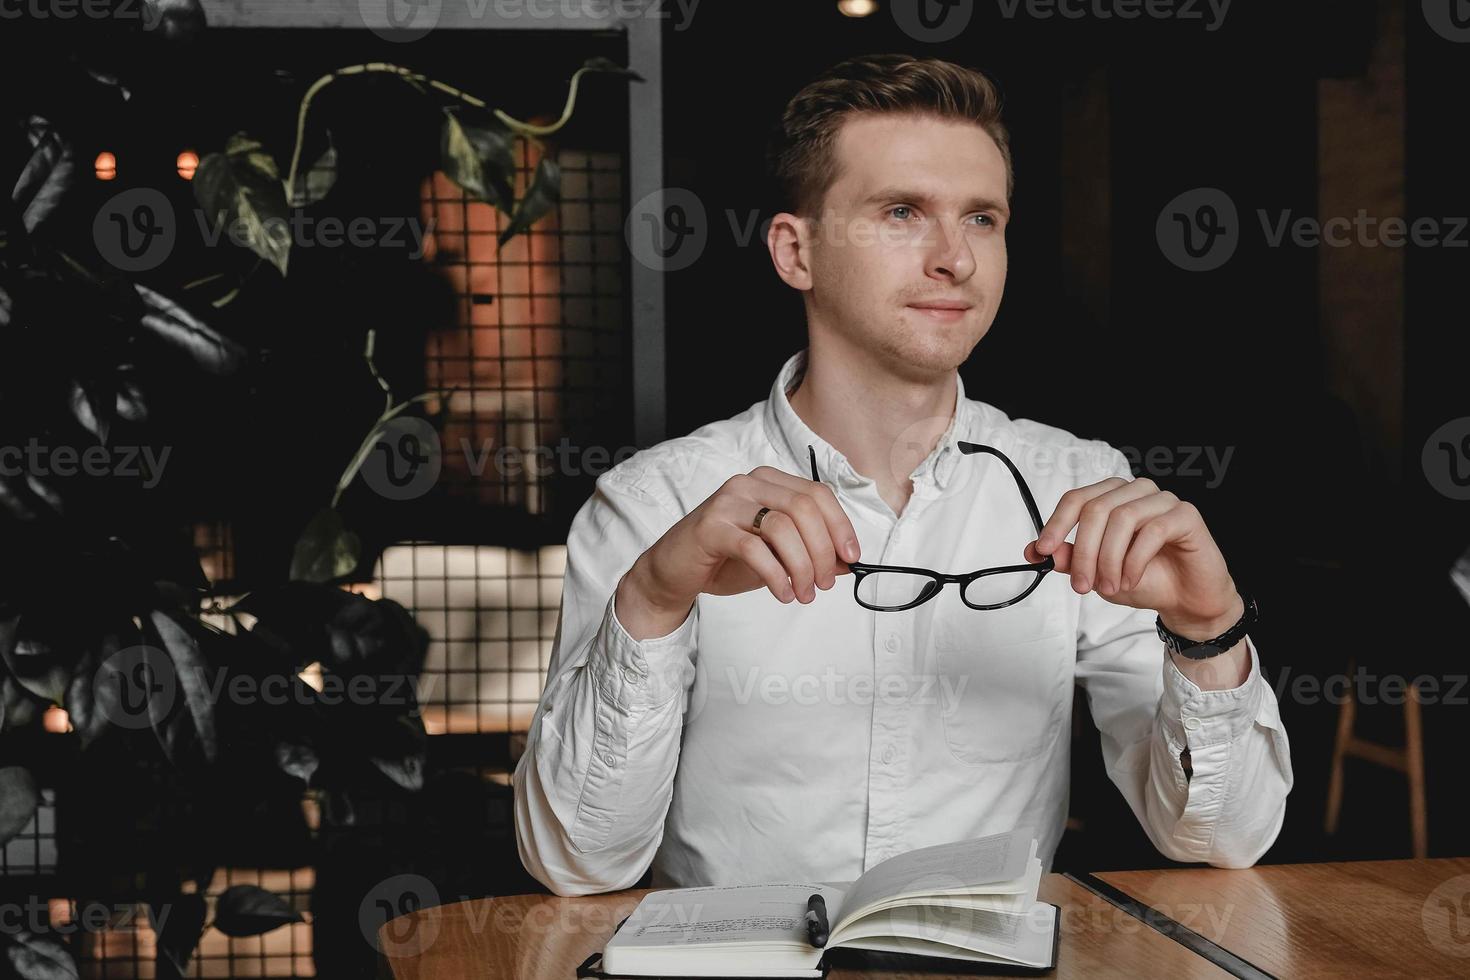 Junger Mann mit weißem Hemd und Brille, der am Tisch sitzt und einen Stift hält, macht sich auf dunklem Hintergrund im Büro Notizen zu seiner Agenda. kopieren, leerer platz für text foto